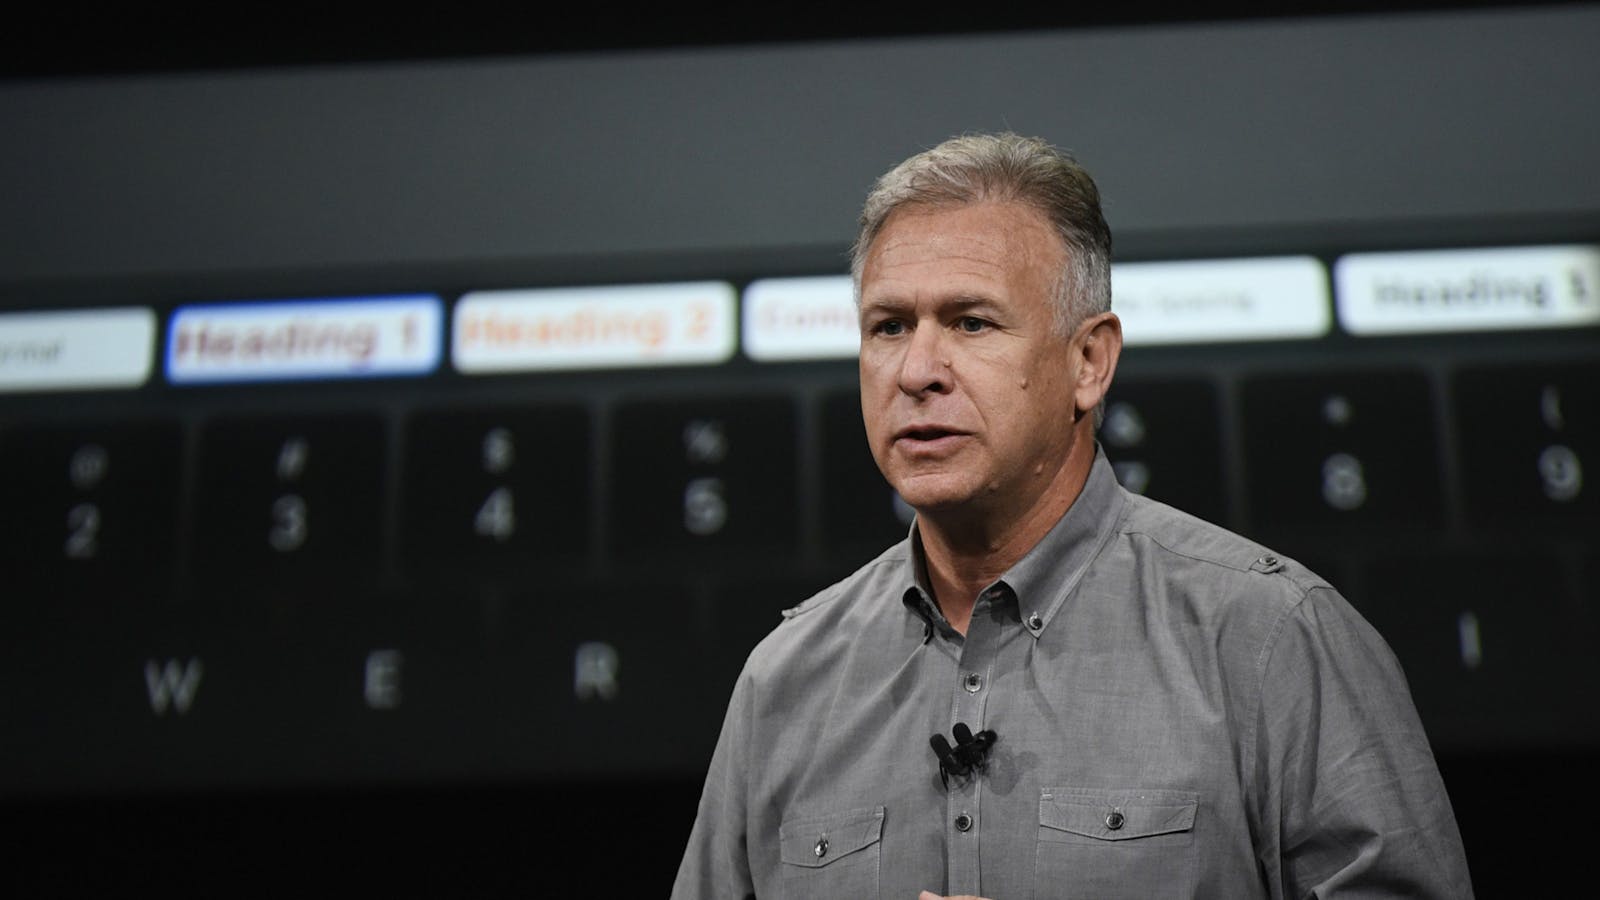 Apple's App Store boss Phil Schiller. Photo by Bloomberg